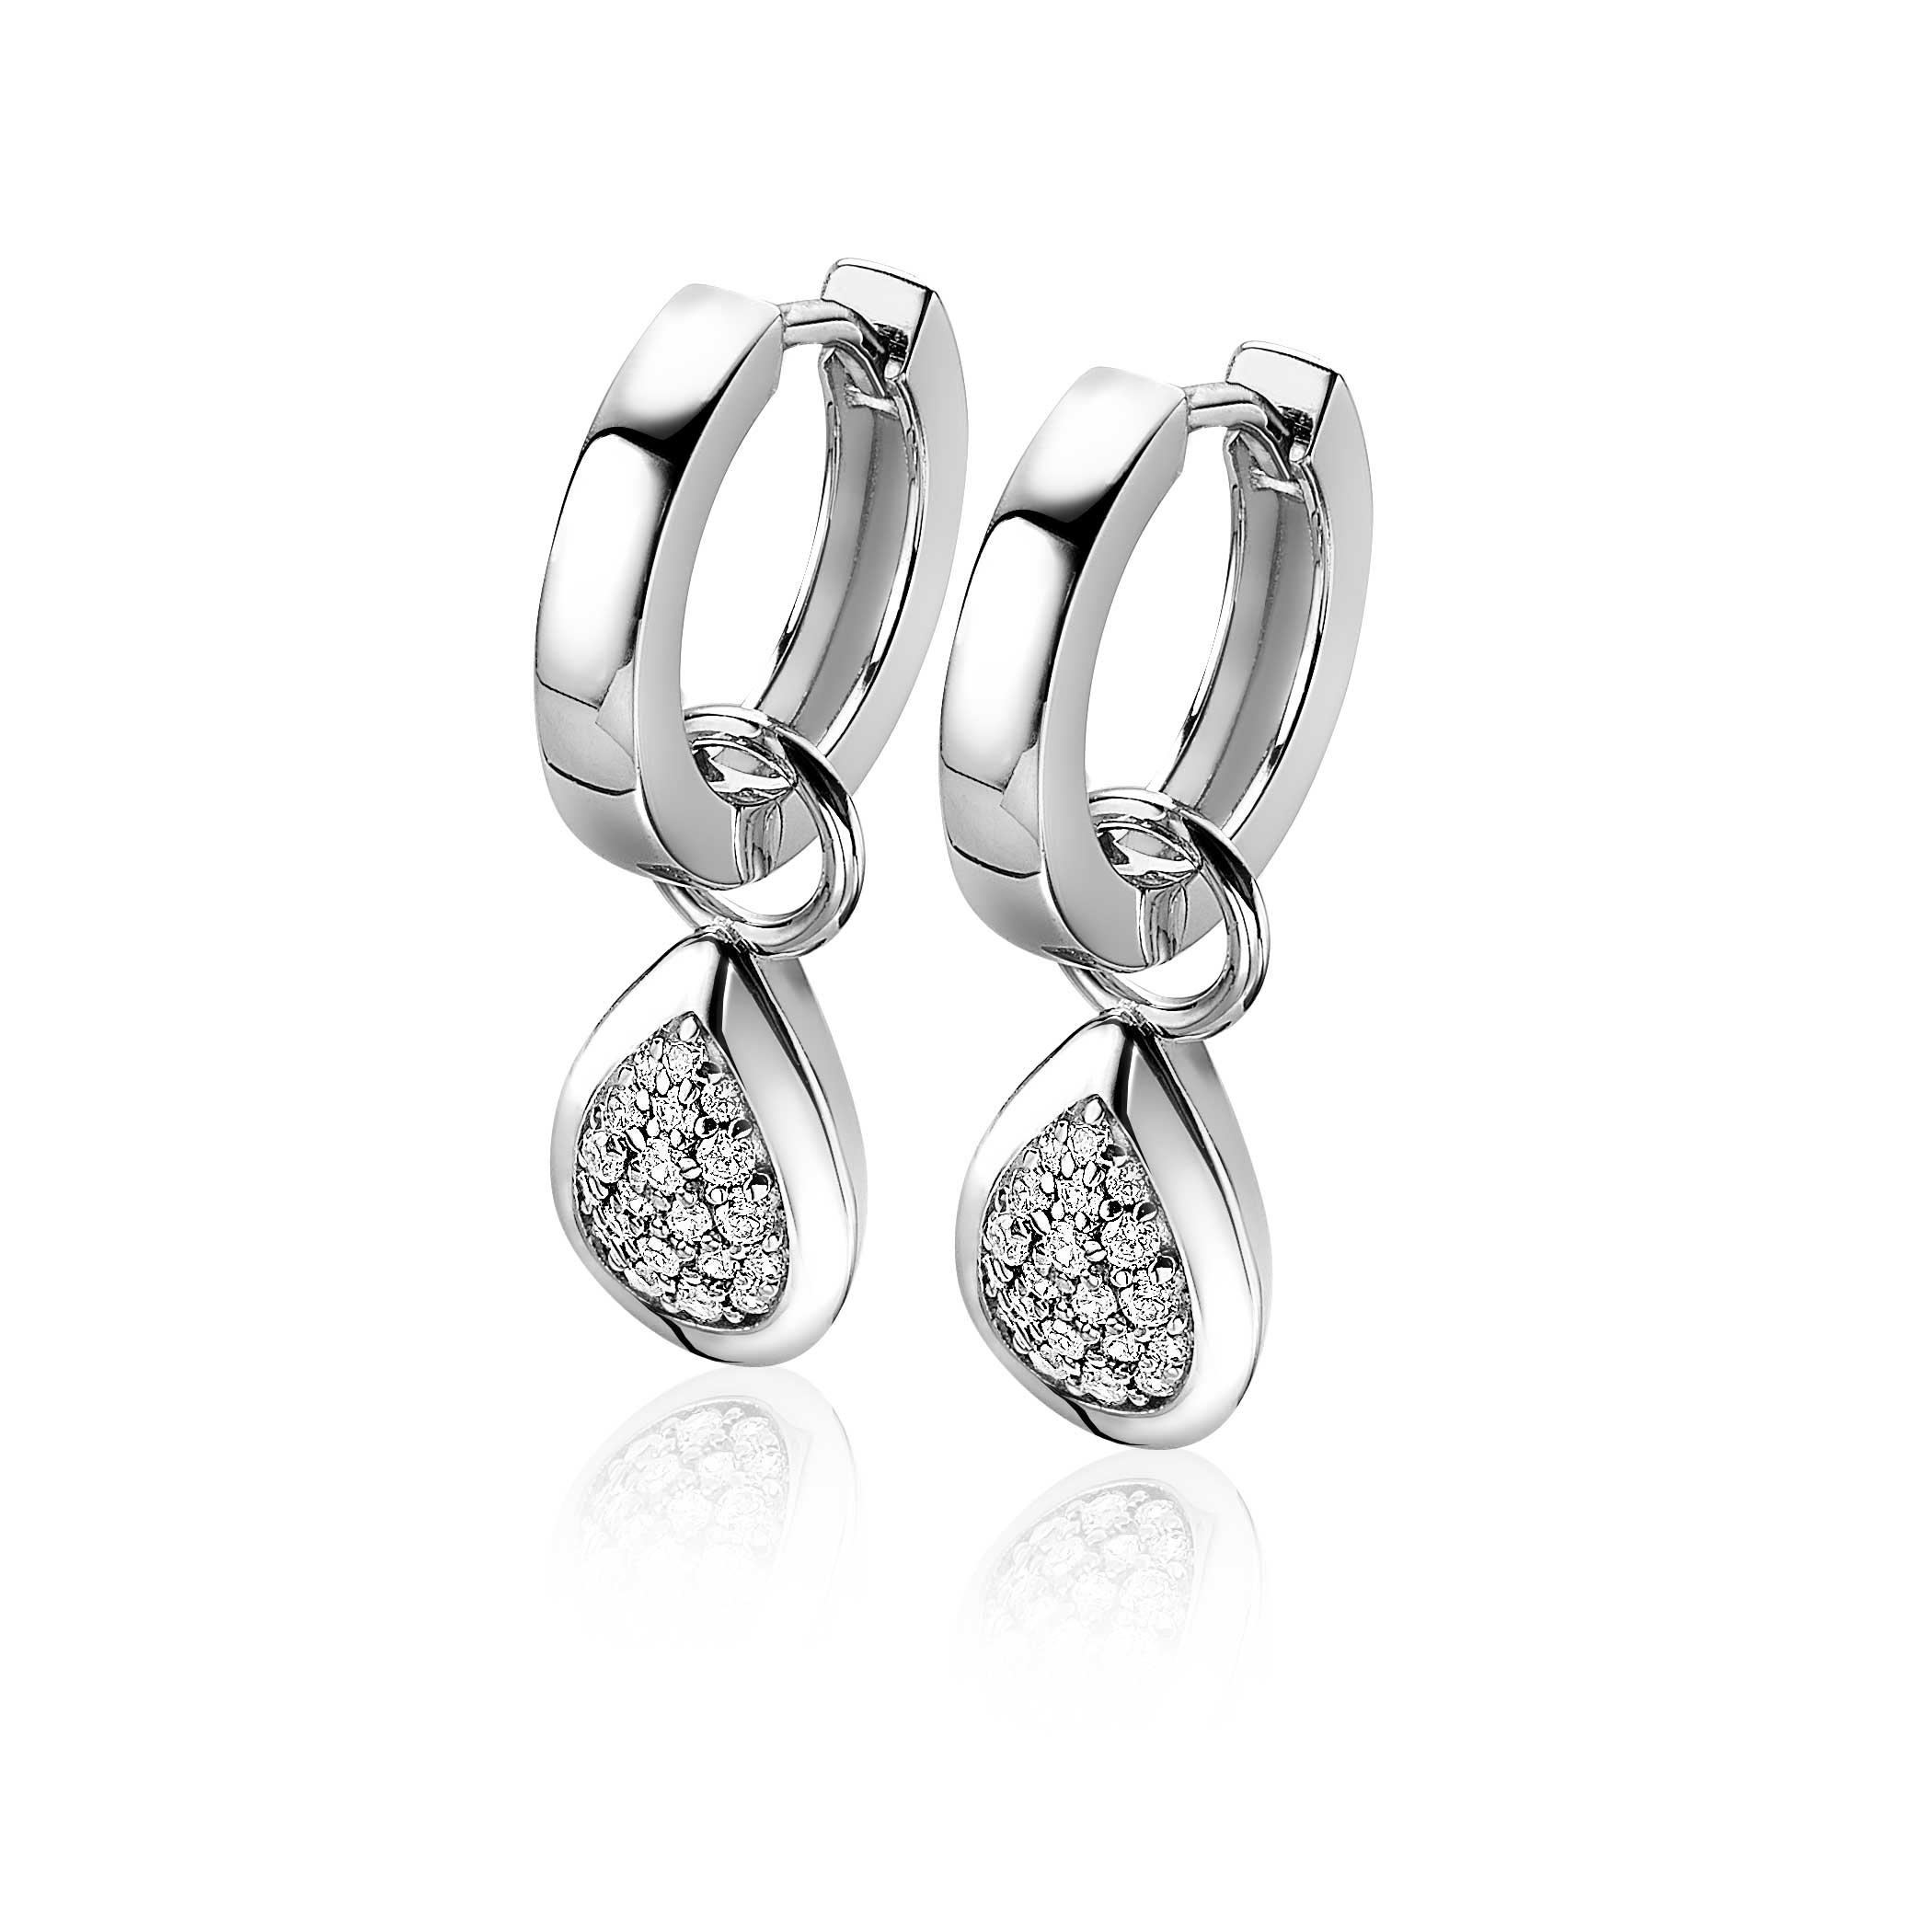 ZINZI Sterling Silver Earrings Pendants Drop White ZICH1768 (excl. hoop earrings)